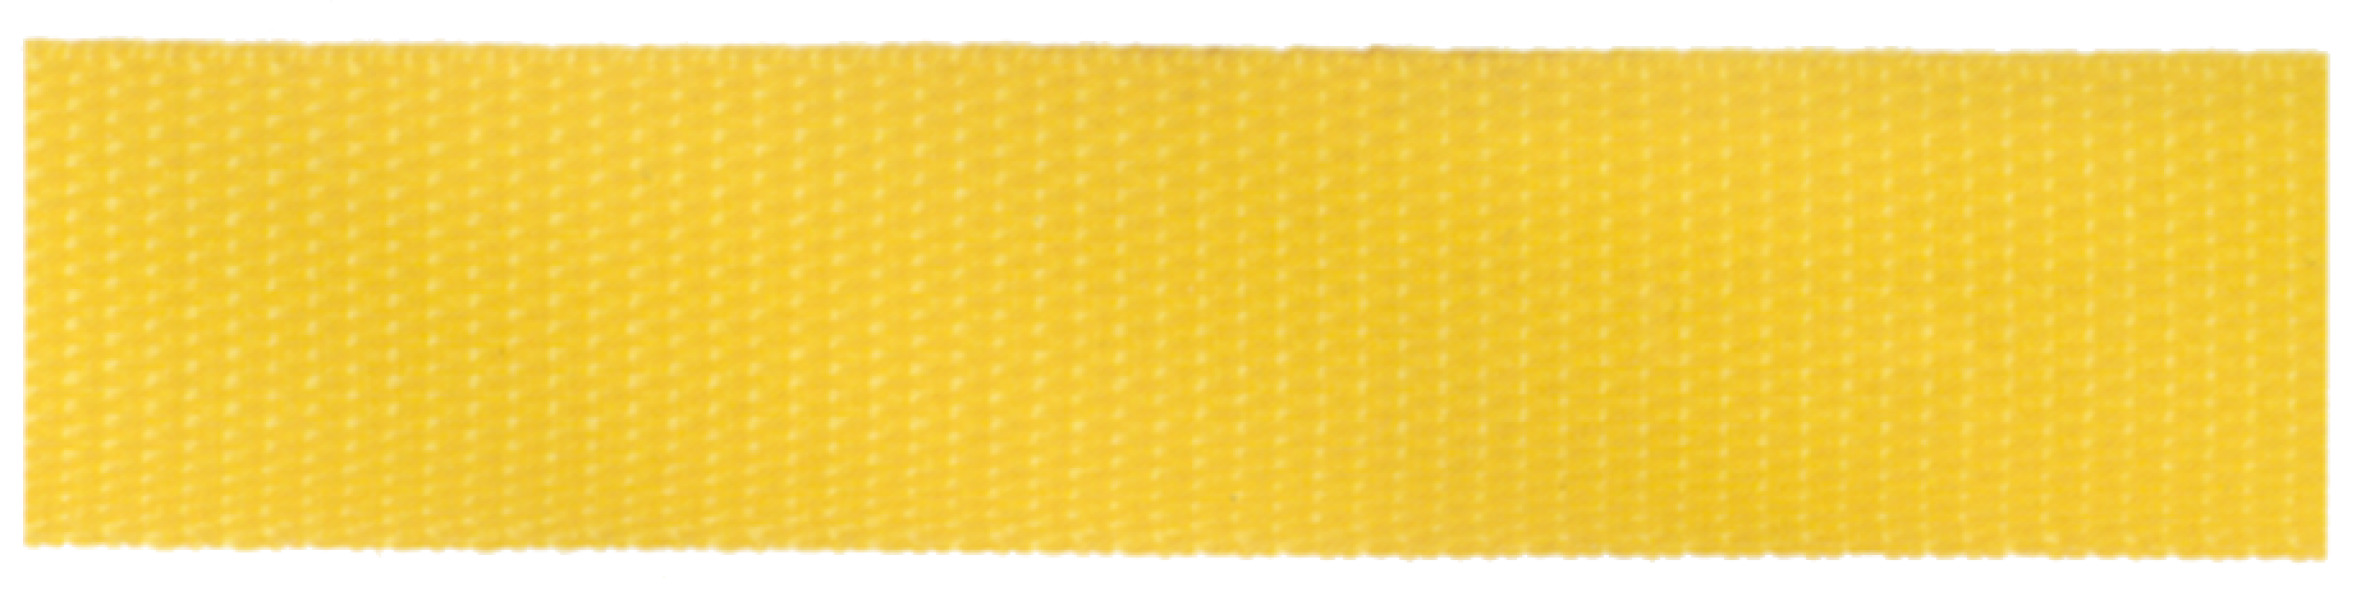 Connex Gurtband, gelb